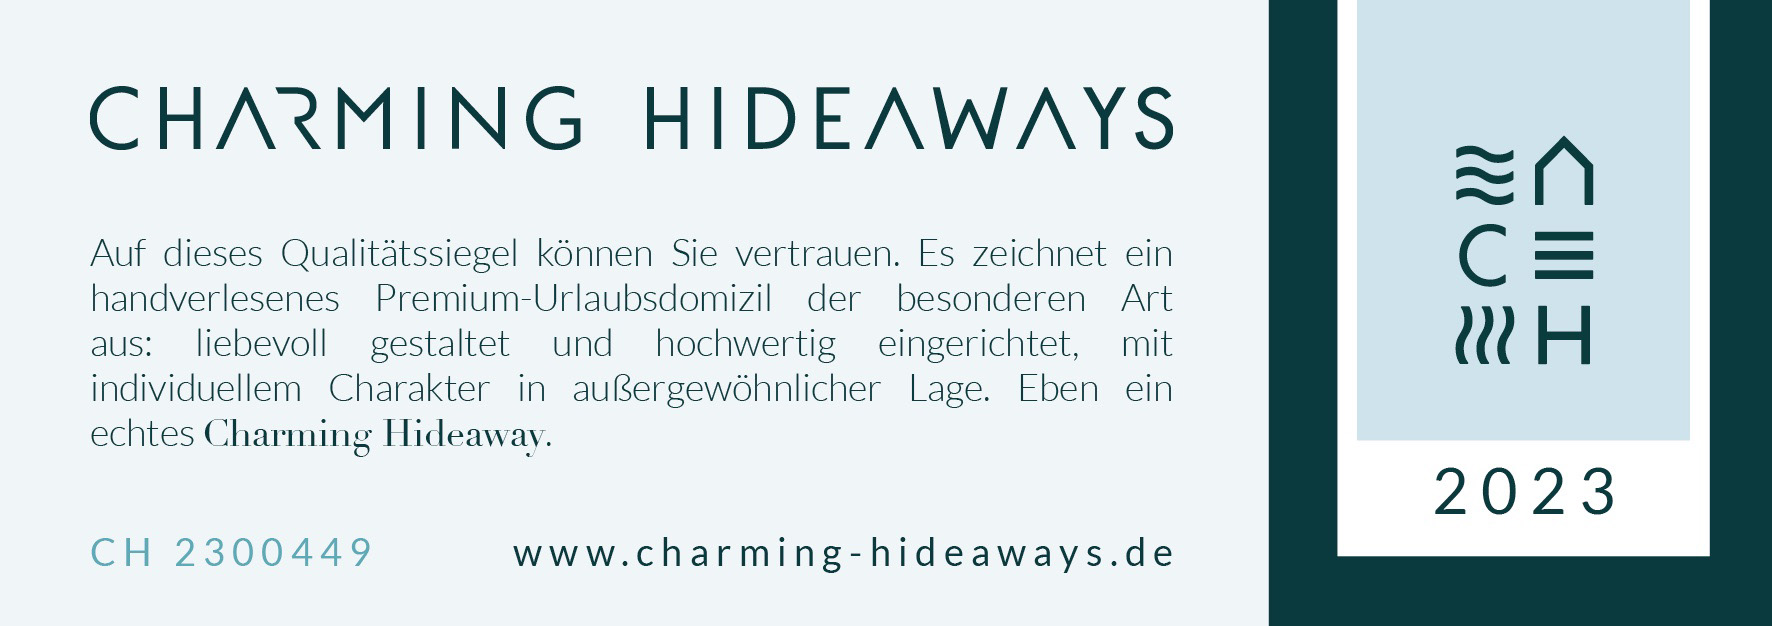 Homepage www.charming-hideaways.de